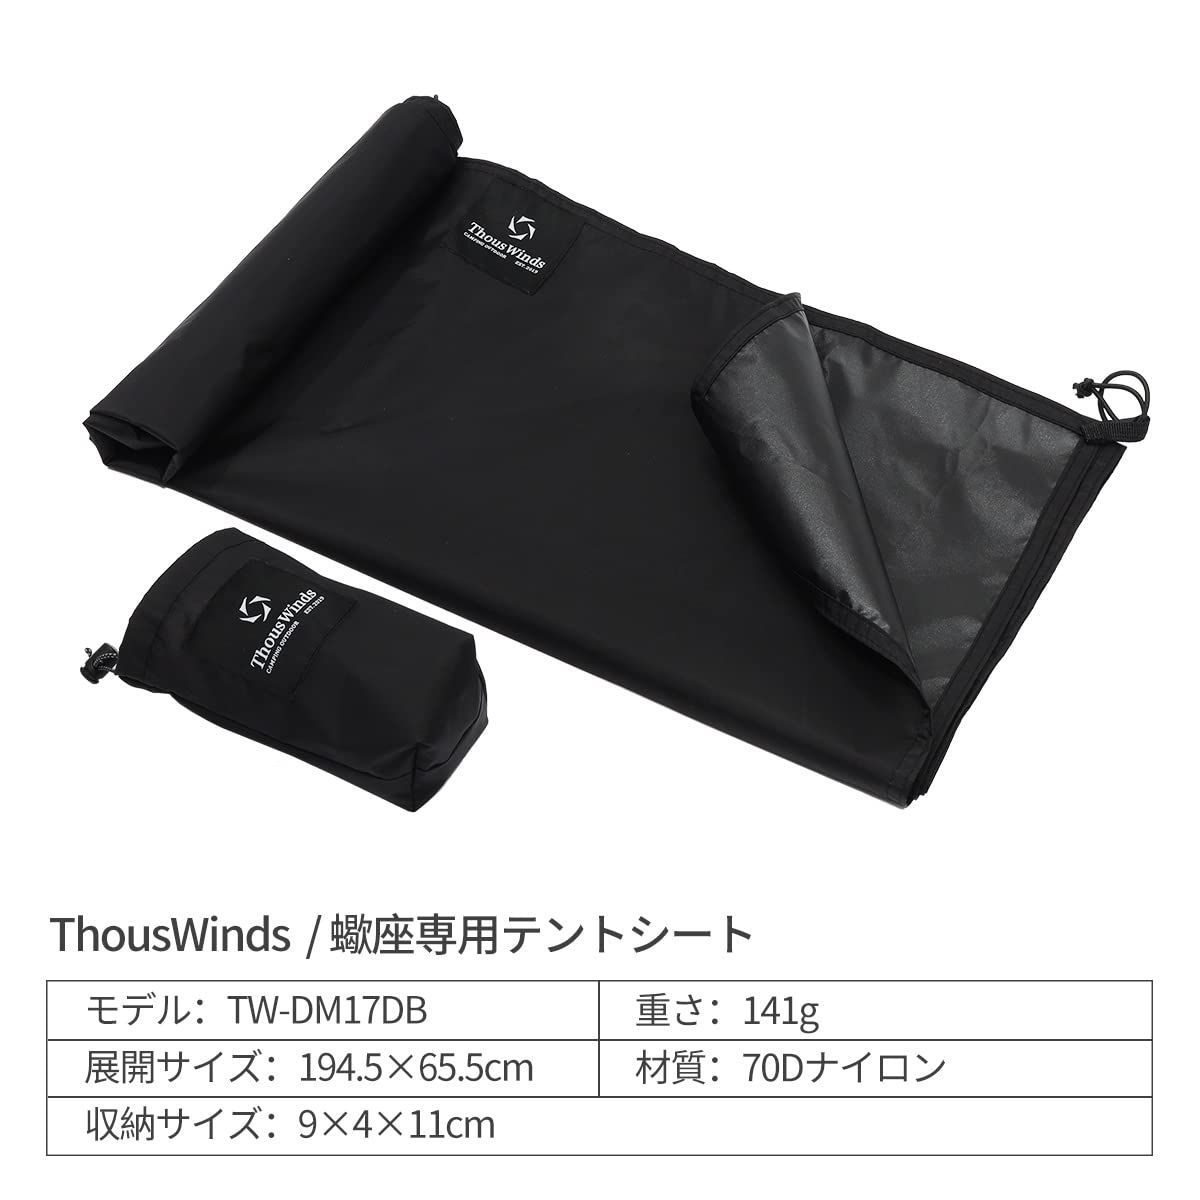 【色: TW-DM18B】Thous Winds テント ソロ 軽量 簡単設営